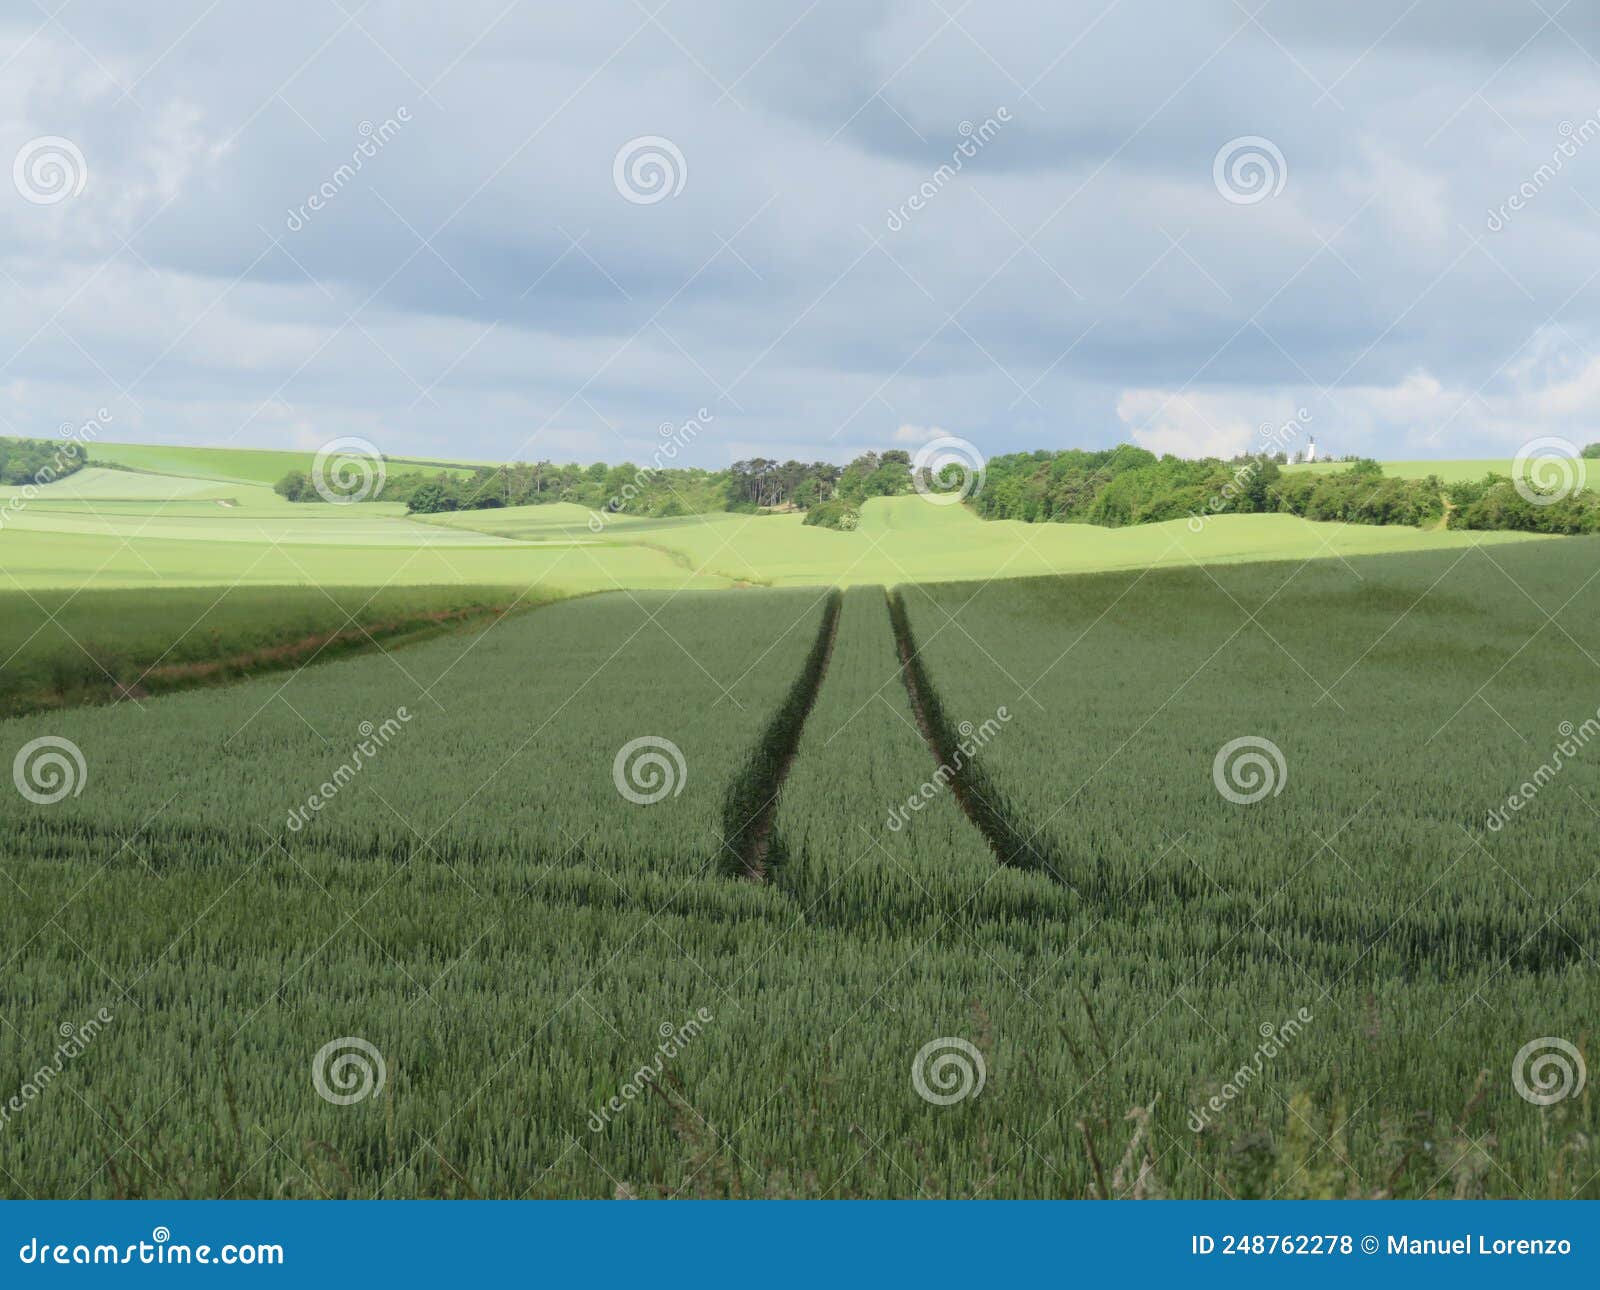 huge cereal fields crops landscapes spring agriculture